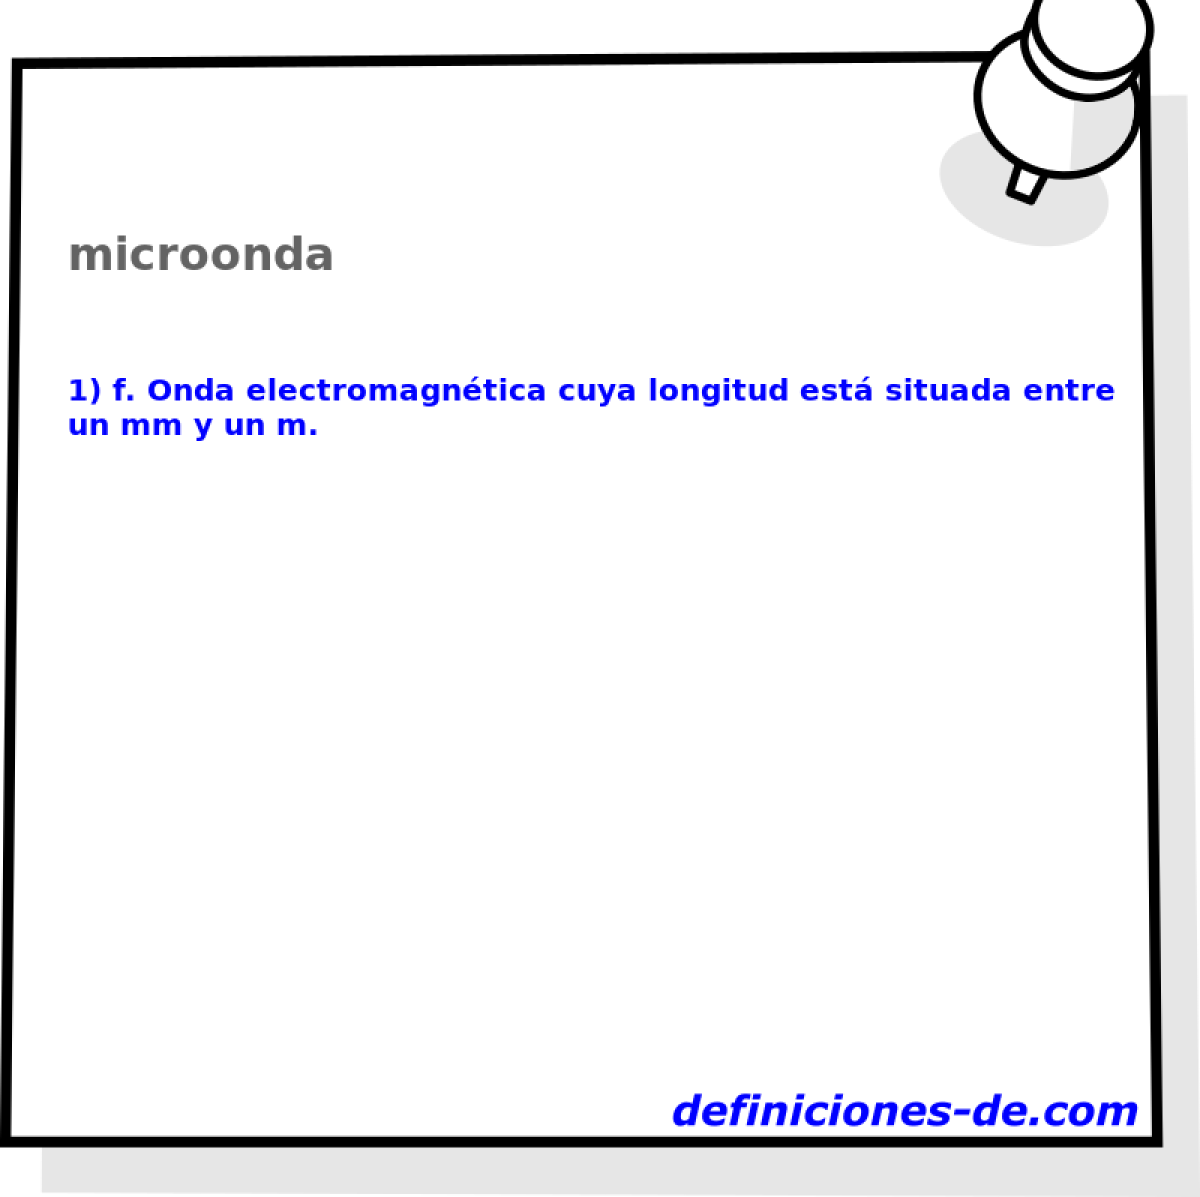 microonda 